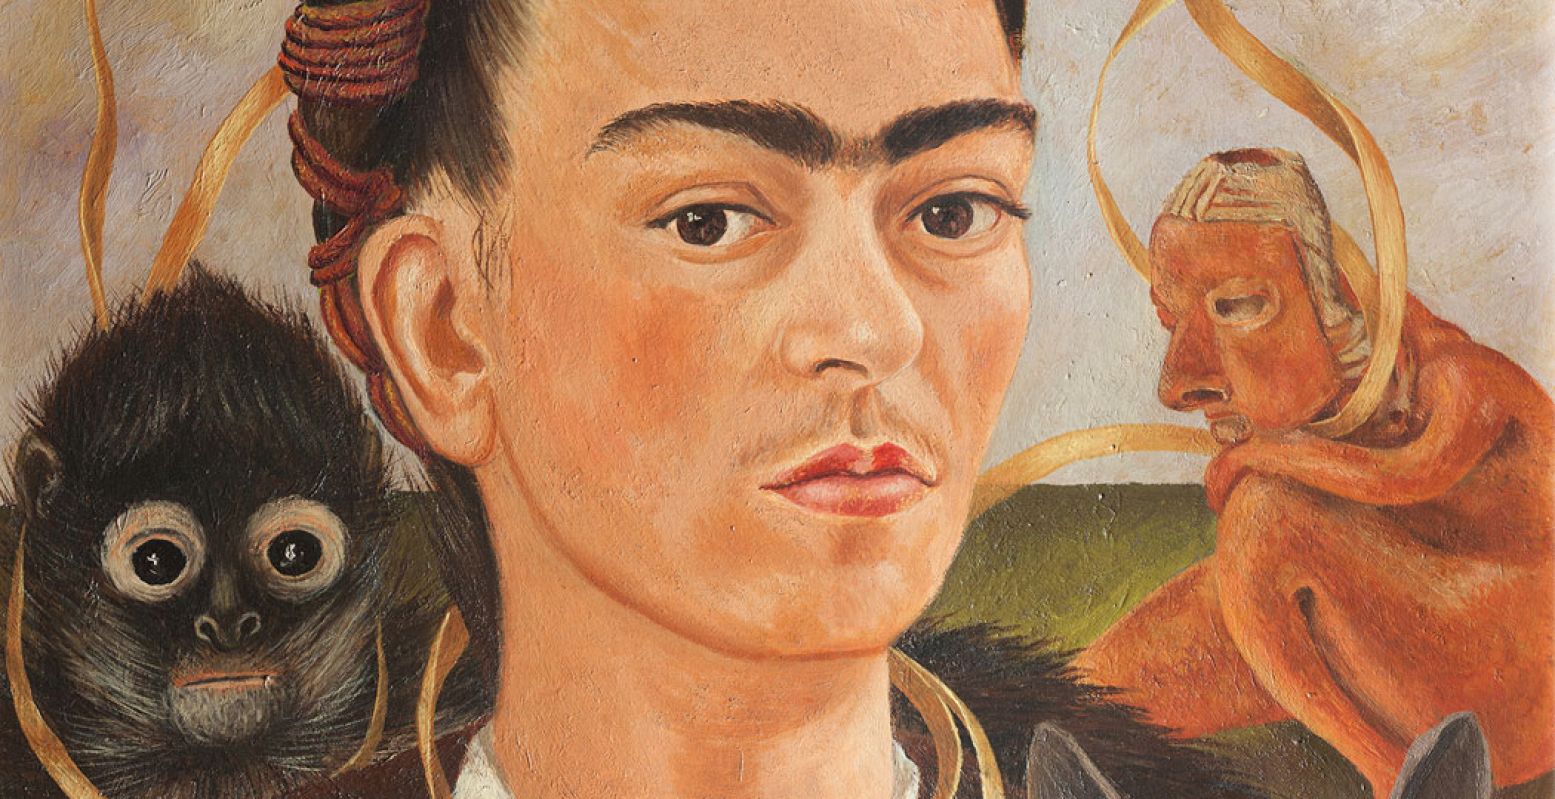 Frida Kahlo (1907-1954), Zelfportret met aapje, 1945, olieverf op doek, 56 x 41,5 cm, Museo Dolores Olmedo, Xochimilco, Mexico Foto: © 2021 Banco de México Diego Rivera & Frida Kahlo Museums Trust, Mexico Stad/ reproductie toegestaan door het Instituto Nacional de Bellas Artes y Literatura, 2021